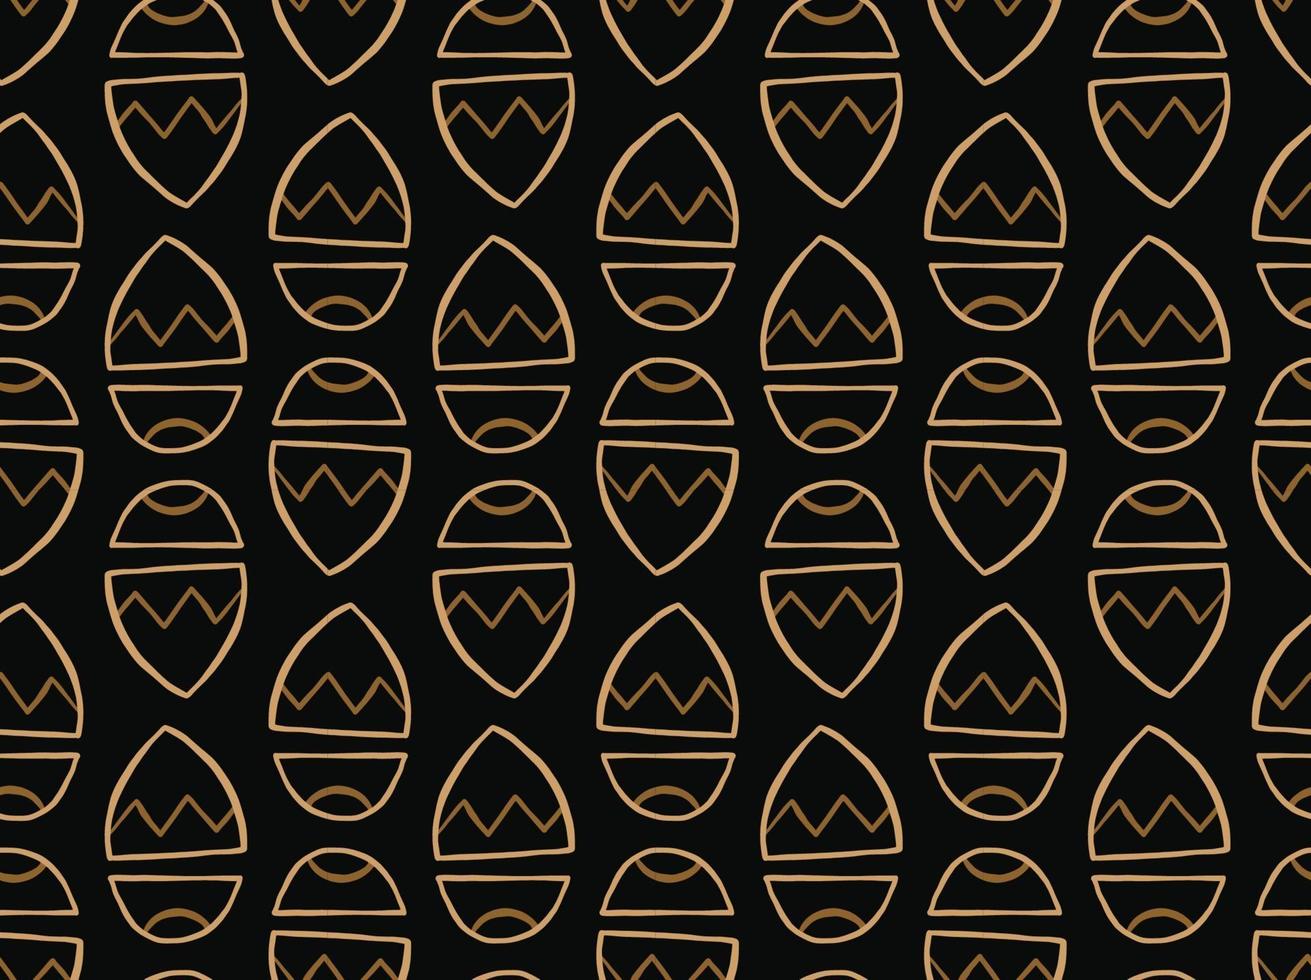 Vektor Textur Hintergrund, nahtloses Muster. handgezeichnete, schwarze, braune Farben.